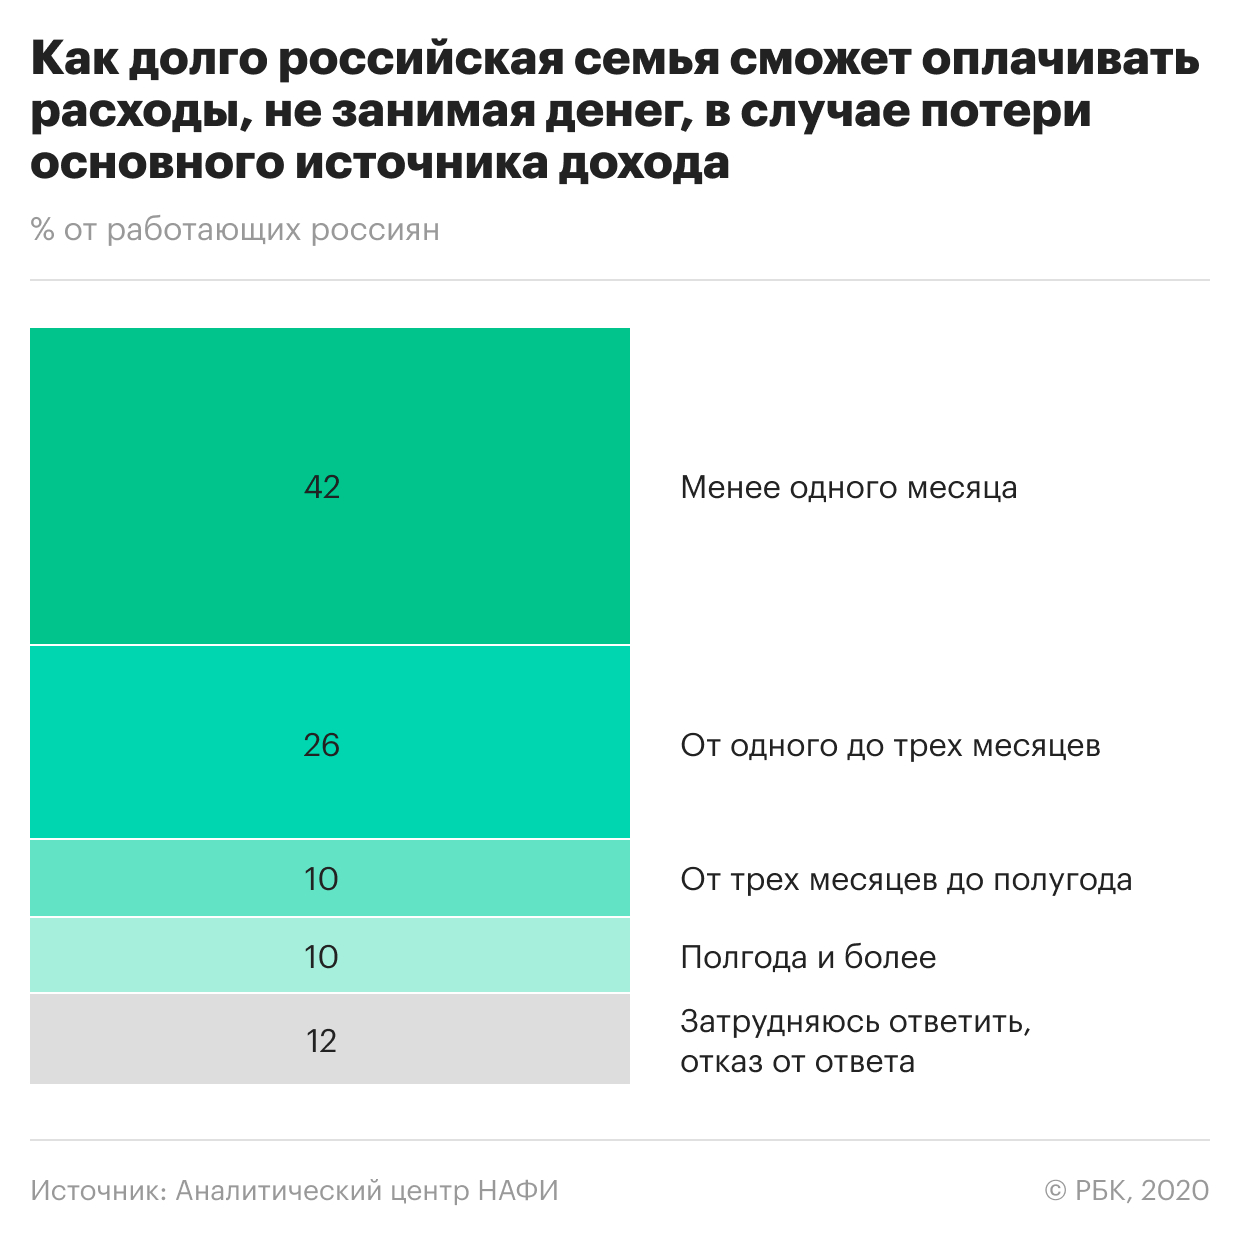 Большинство россиян оказались без сбережений в кризис